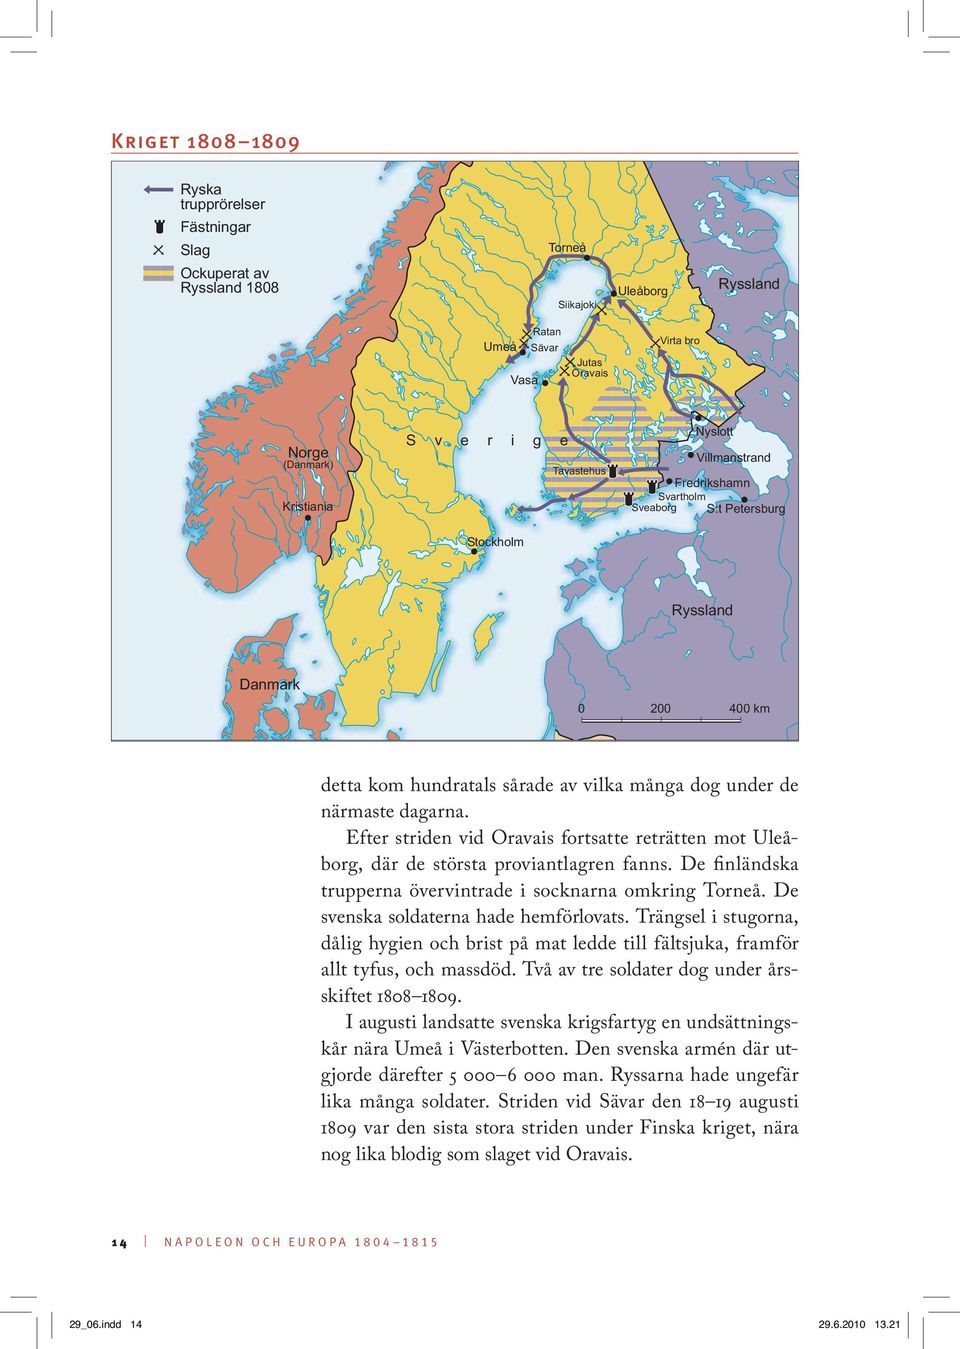 Efter striden vid Oravais fortsatte reträtten mot Uleåborg, där de största proviantlagren fanns. De finländska trupperna övervintrade i socknarna omkring Torneå.